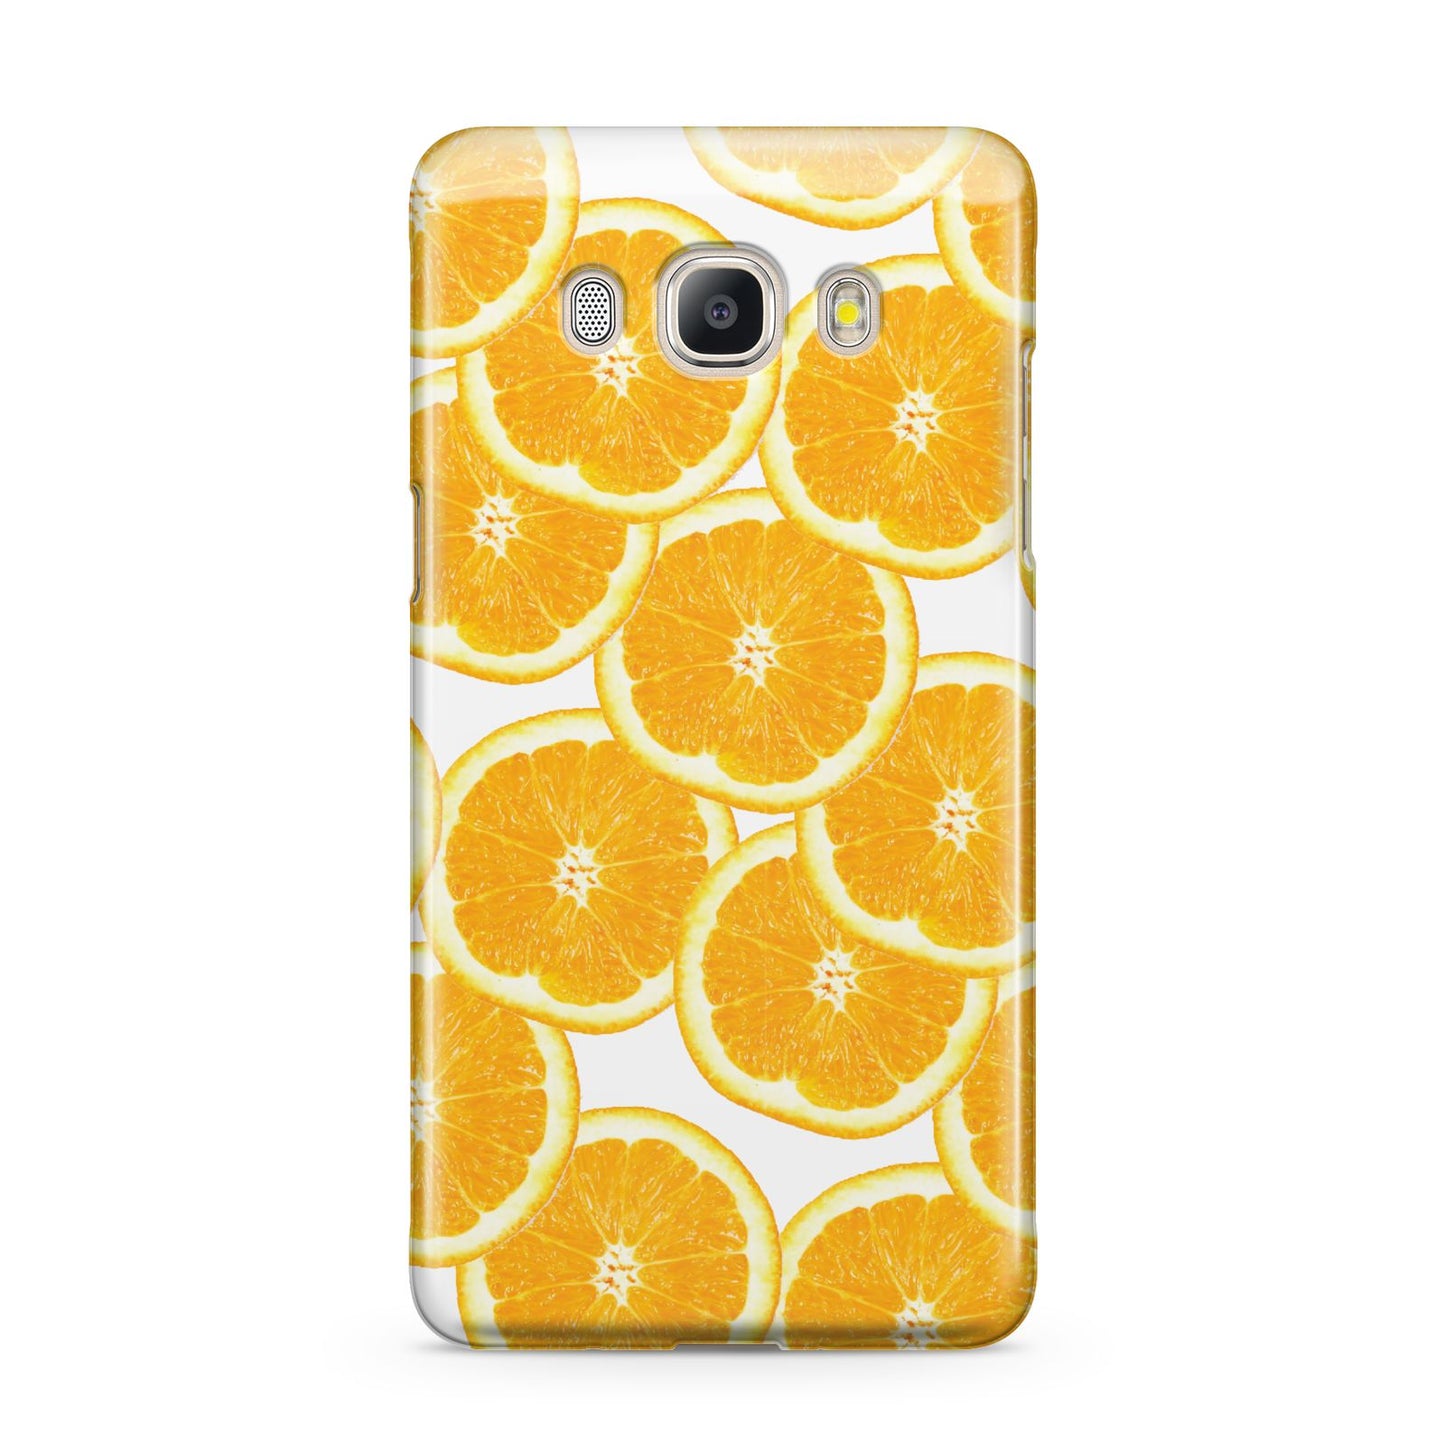 Orange Fruit Slices Samsung Galaxy J5 2016 Case